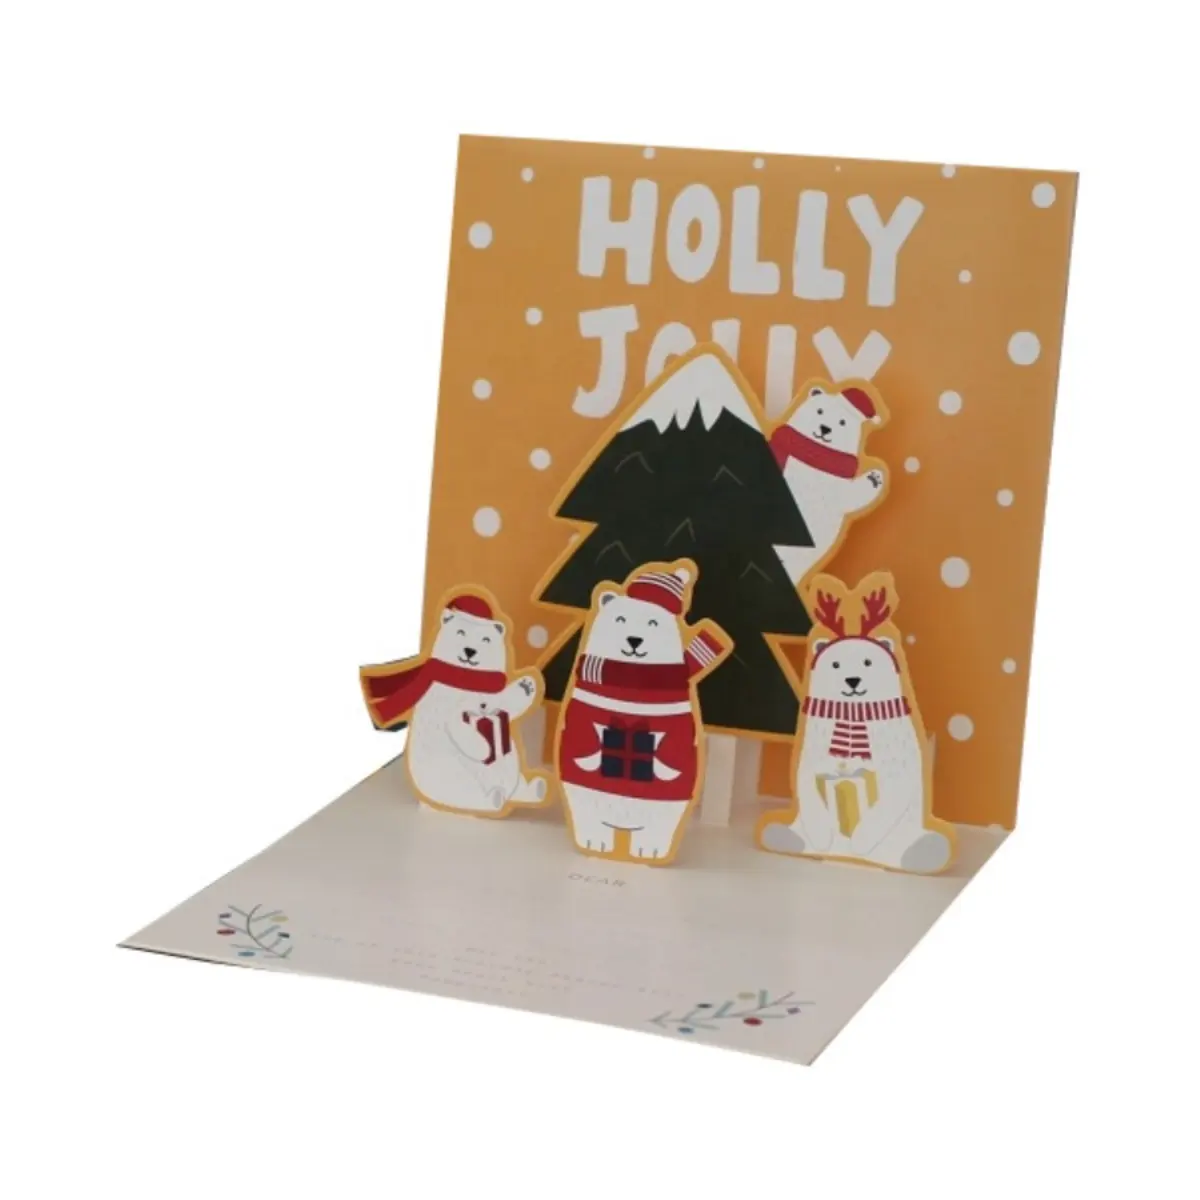 بطاقة تهنئة عيد الميلاد ثلاثية الأبعاد بطاقة بريدية جديدة وبسيطة ومبتكرة بطاقة تهنئة عيد الميلاد وبطاقة عبارة thank you هدية وبطاقة بريدية